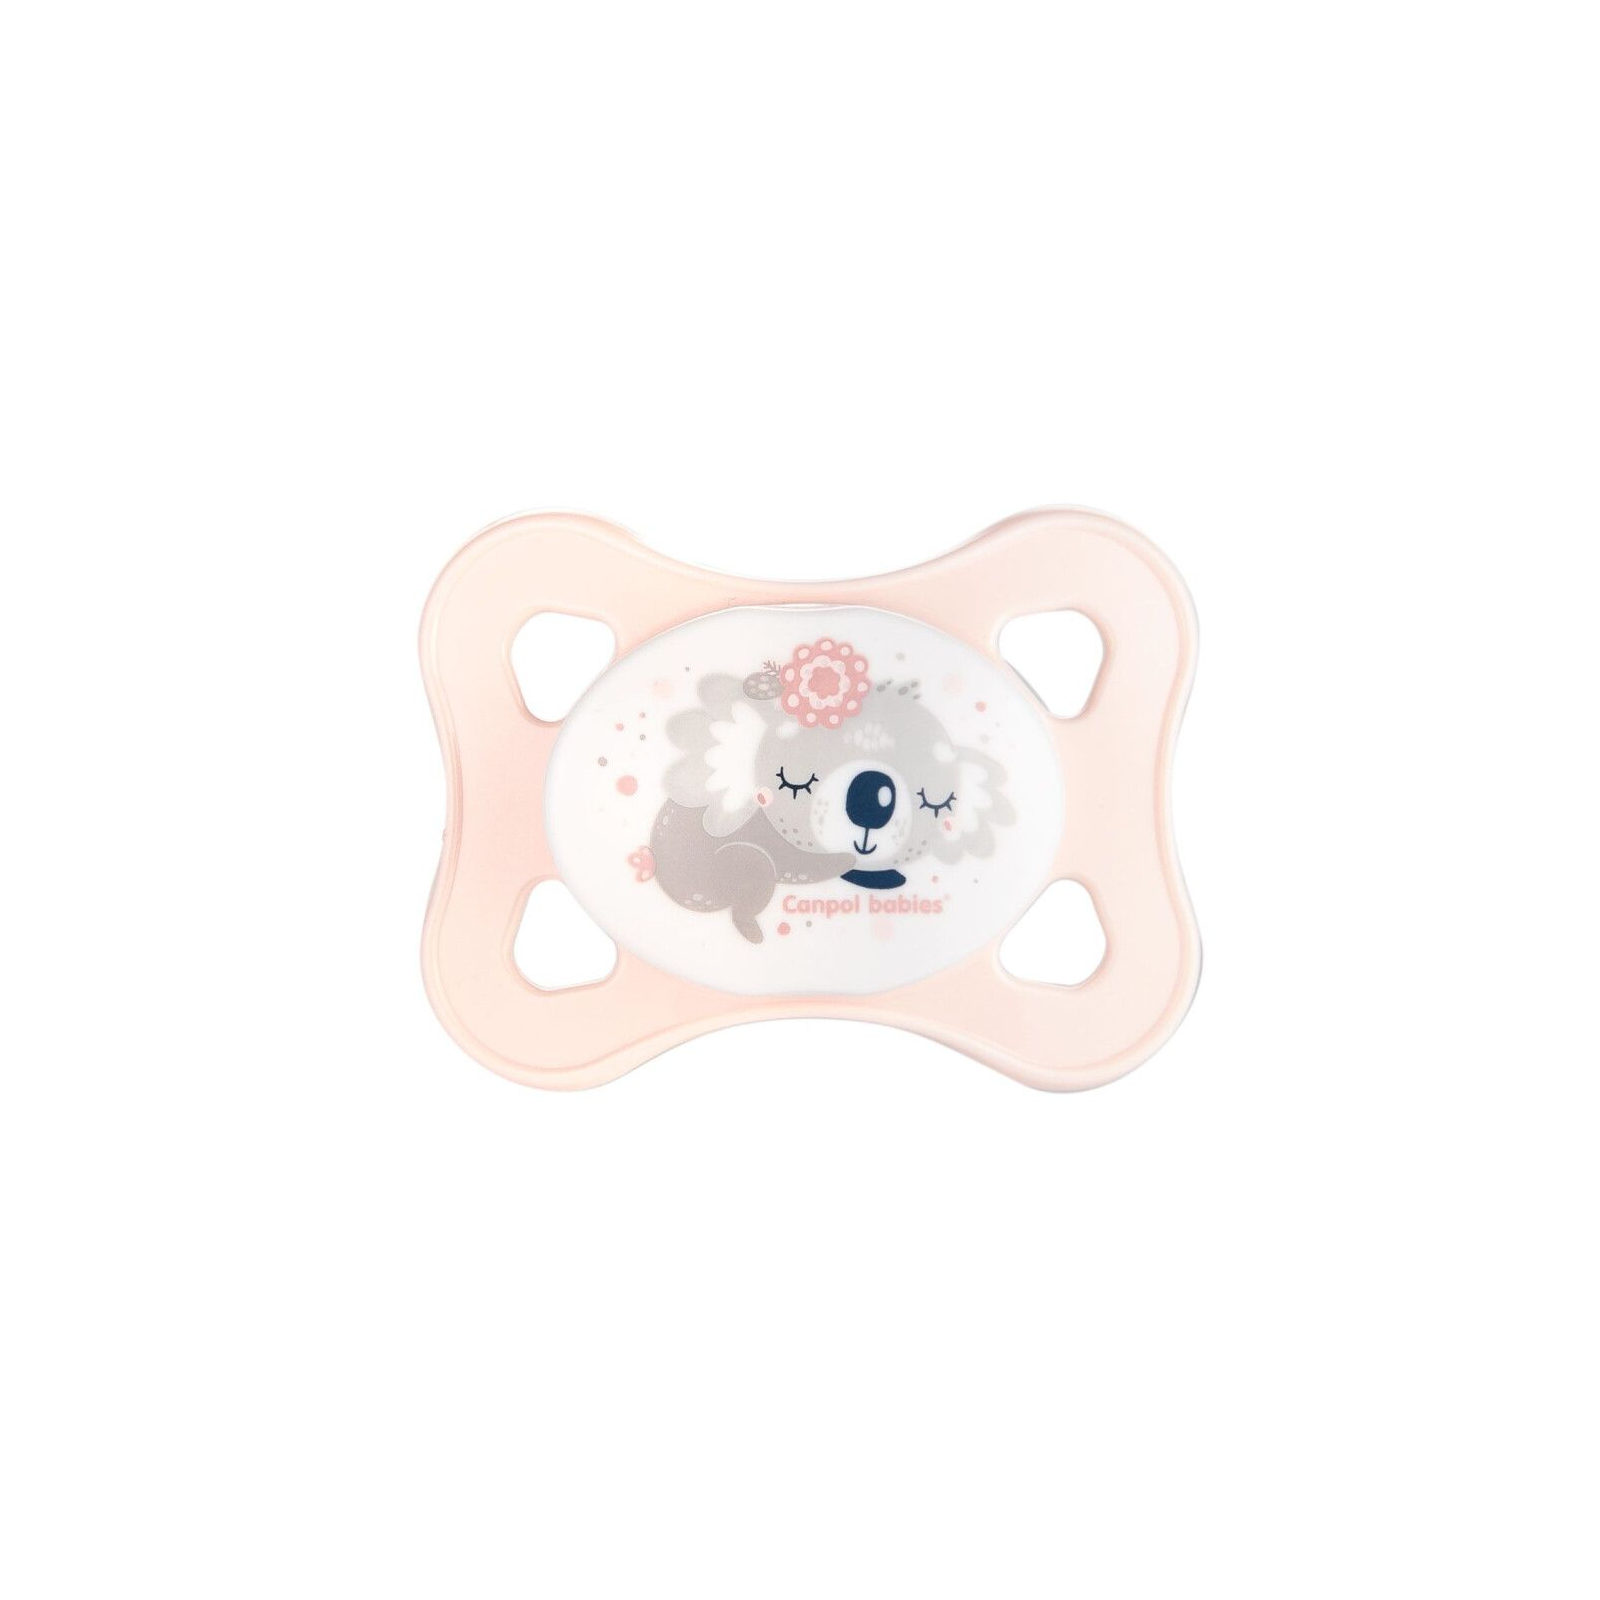 Набор для кормления новорожденных Canpol babies MINI Girl Бутылочка 120 мл и Пустышка (0310mix) изображение 2